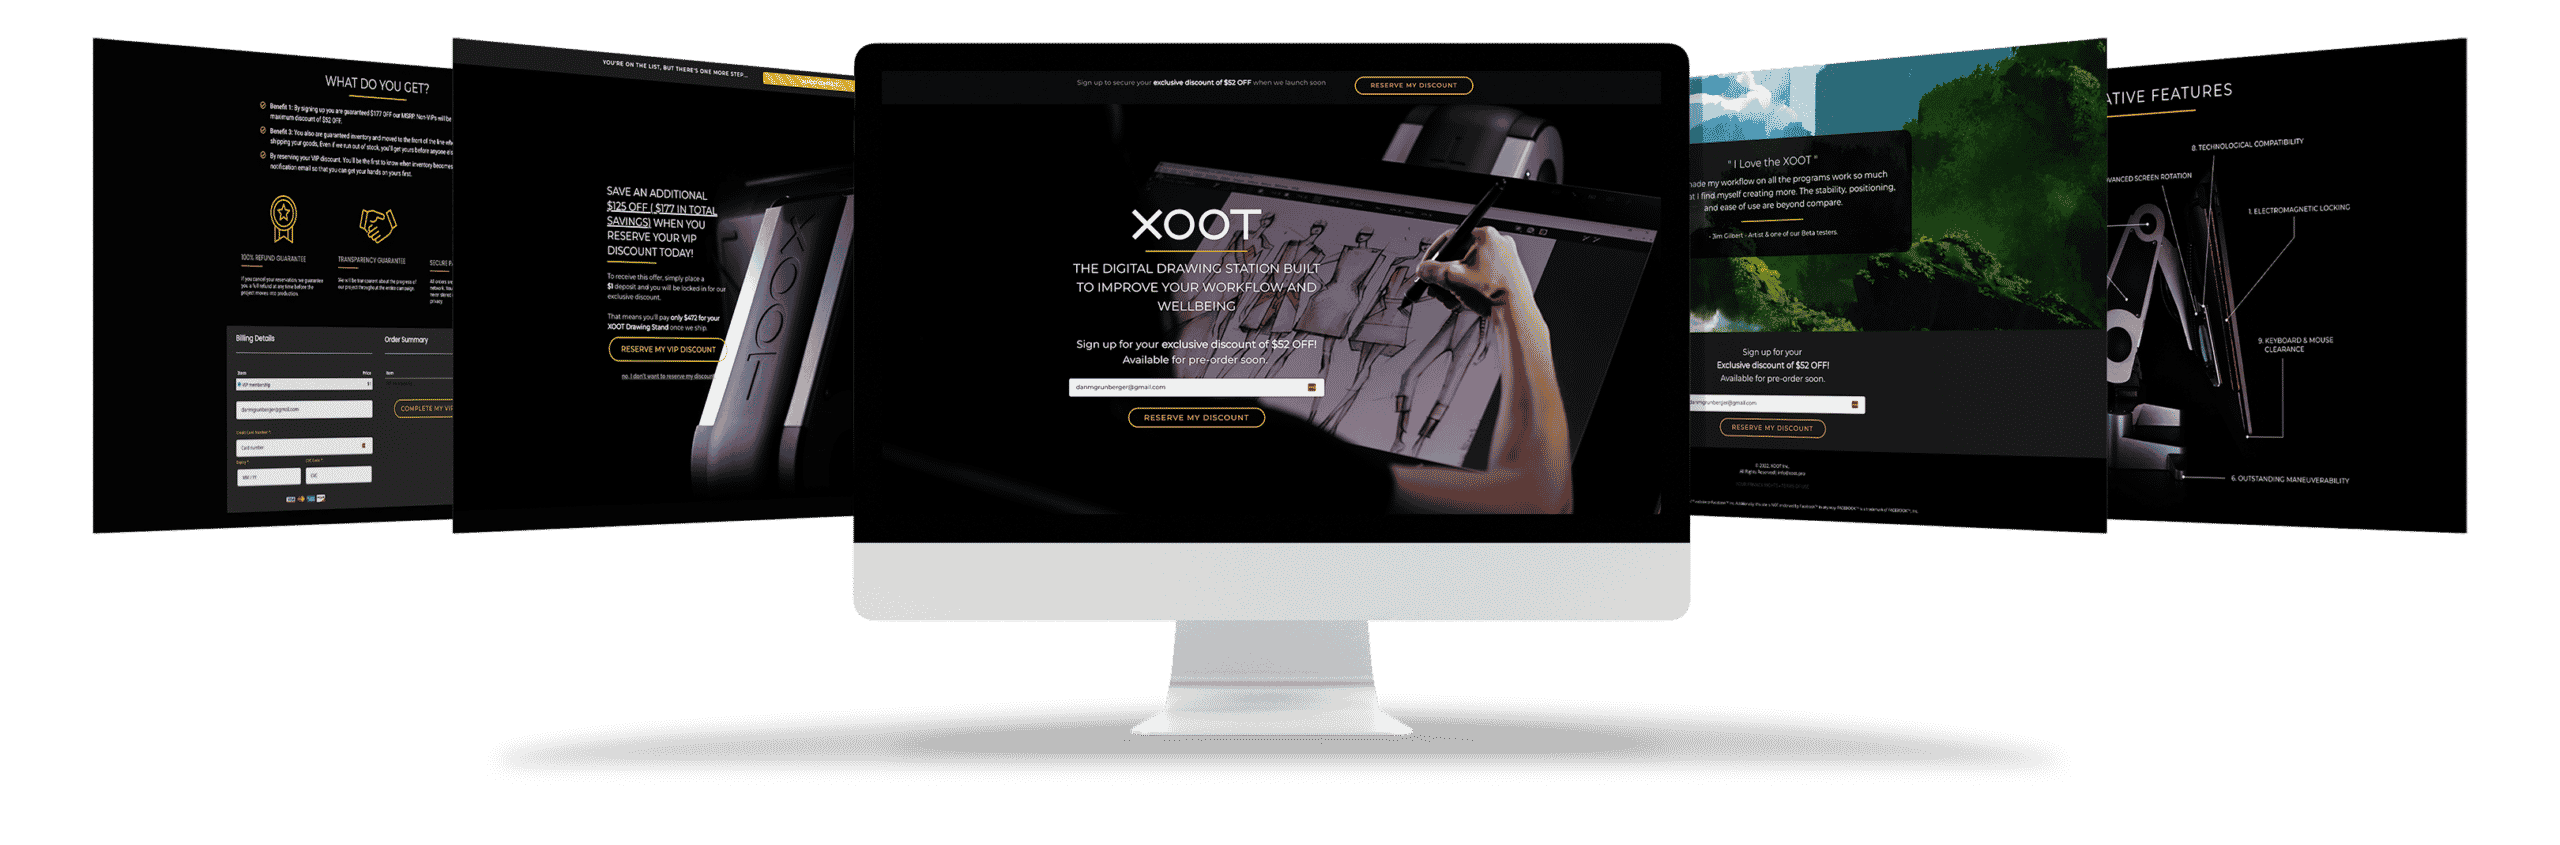 XOOT Pro ecommerce web design mockup